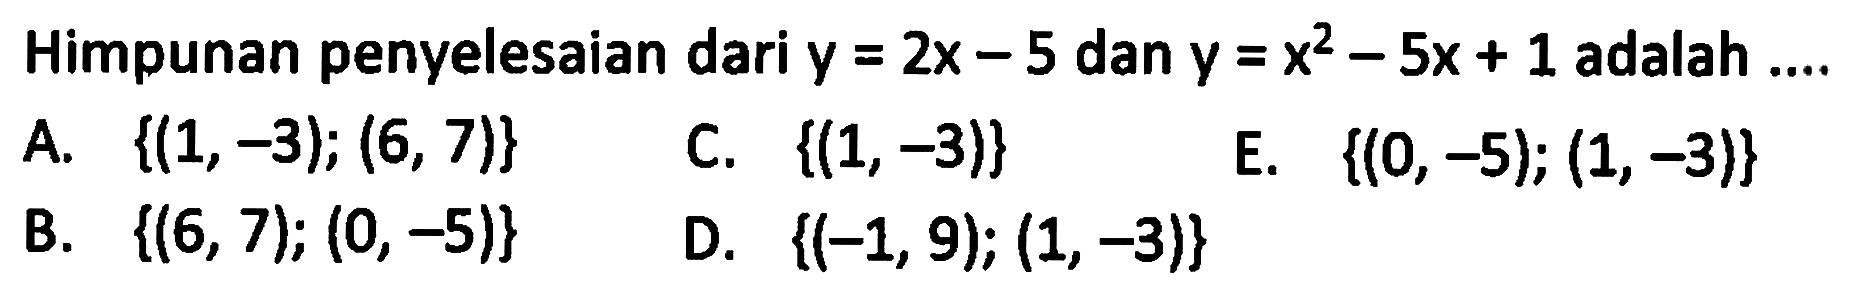 Himpunan penyelesaian dari y=2x-5 dan y=x^2-5x+1 adalah....